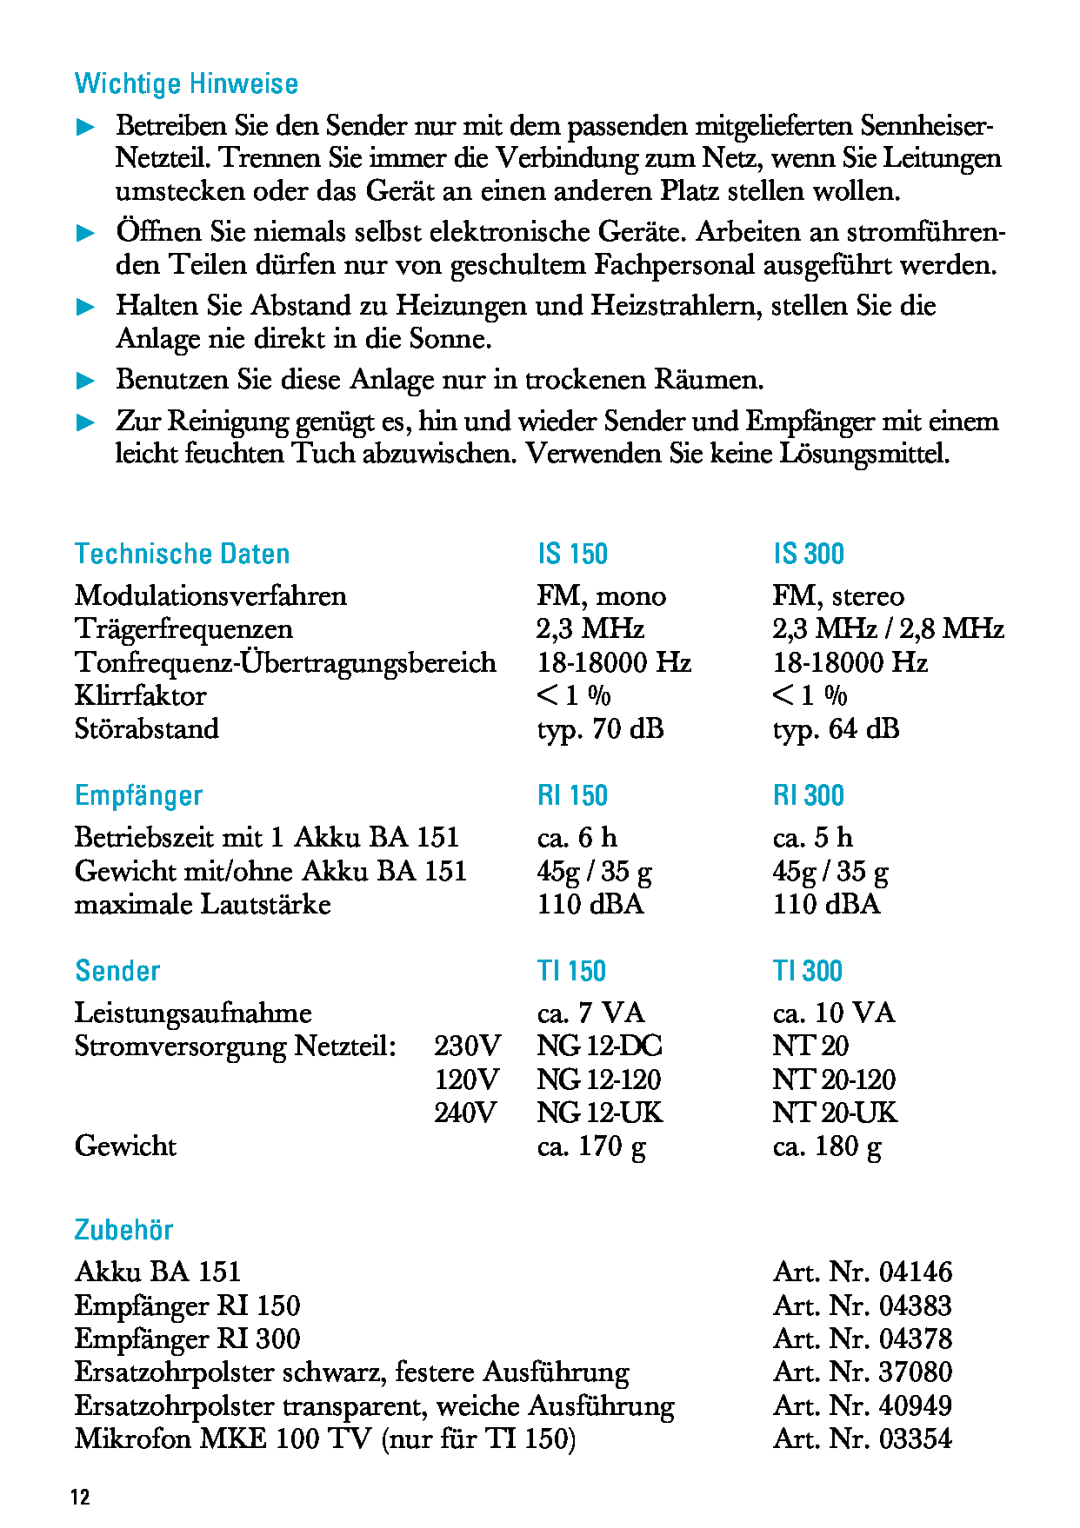 Sennheiser MX300, PC 150 manual Wichtige Hinweise, Technische Daten, Empfänger, Sender, Zubehör 